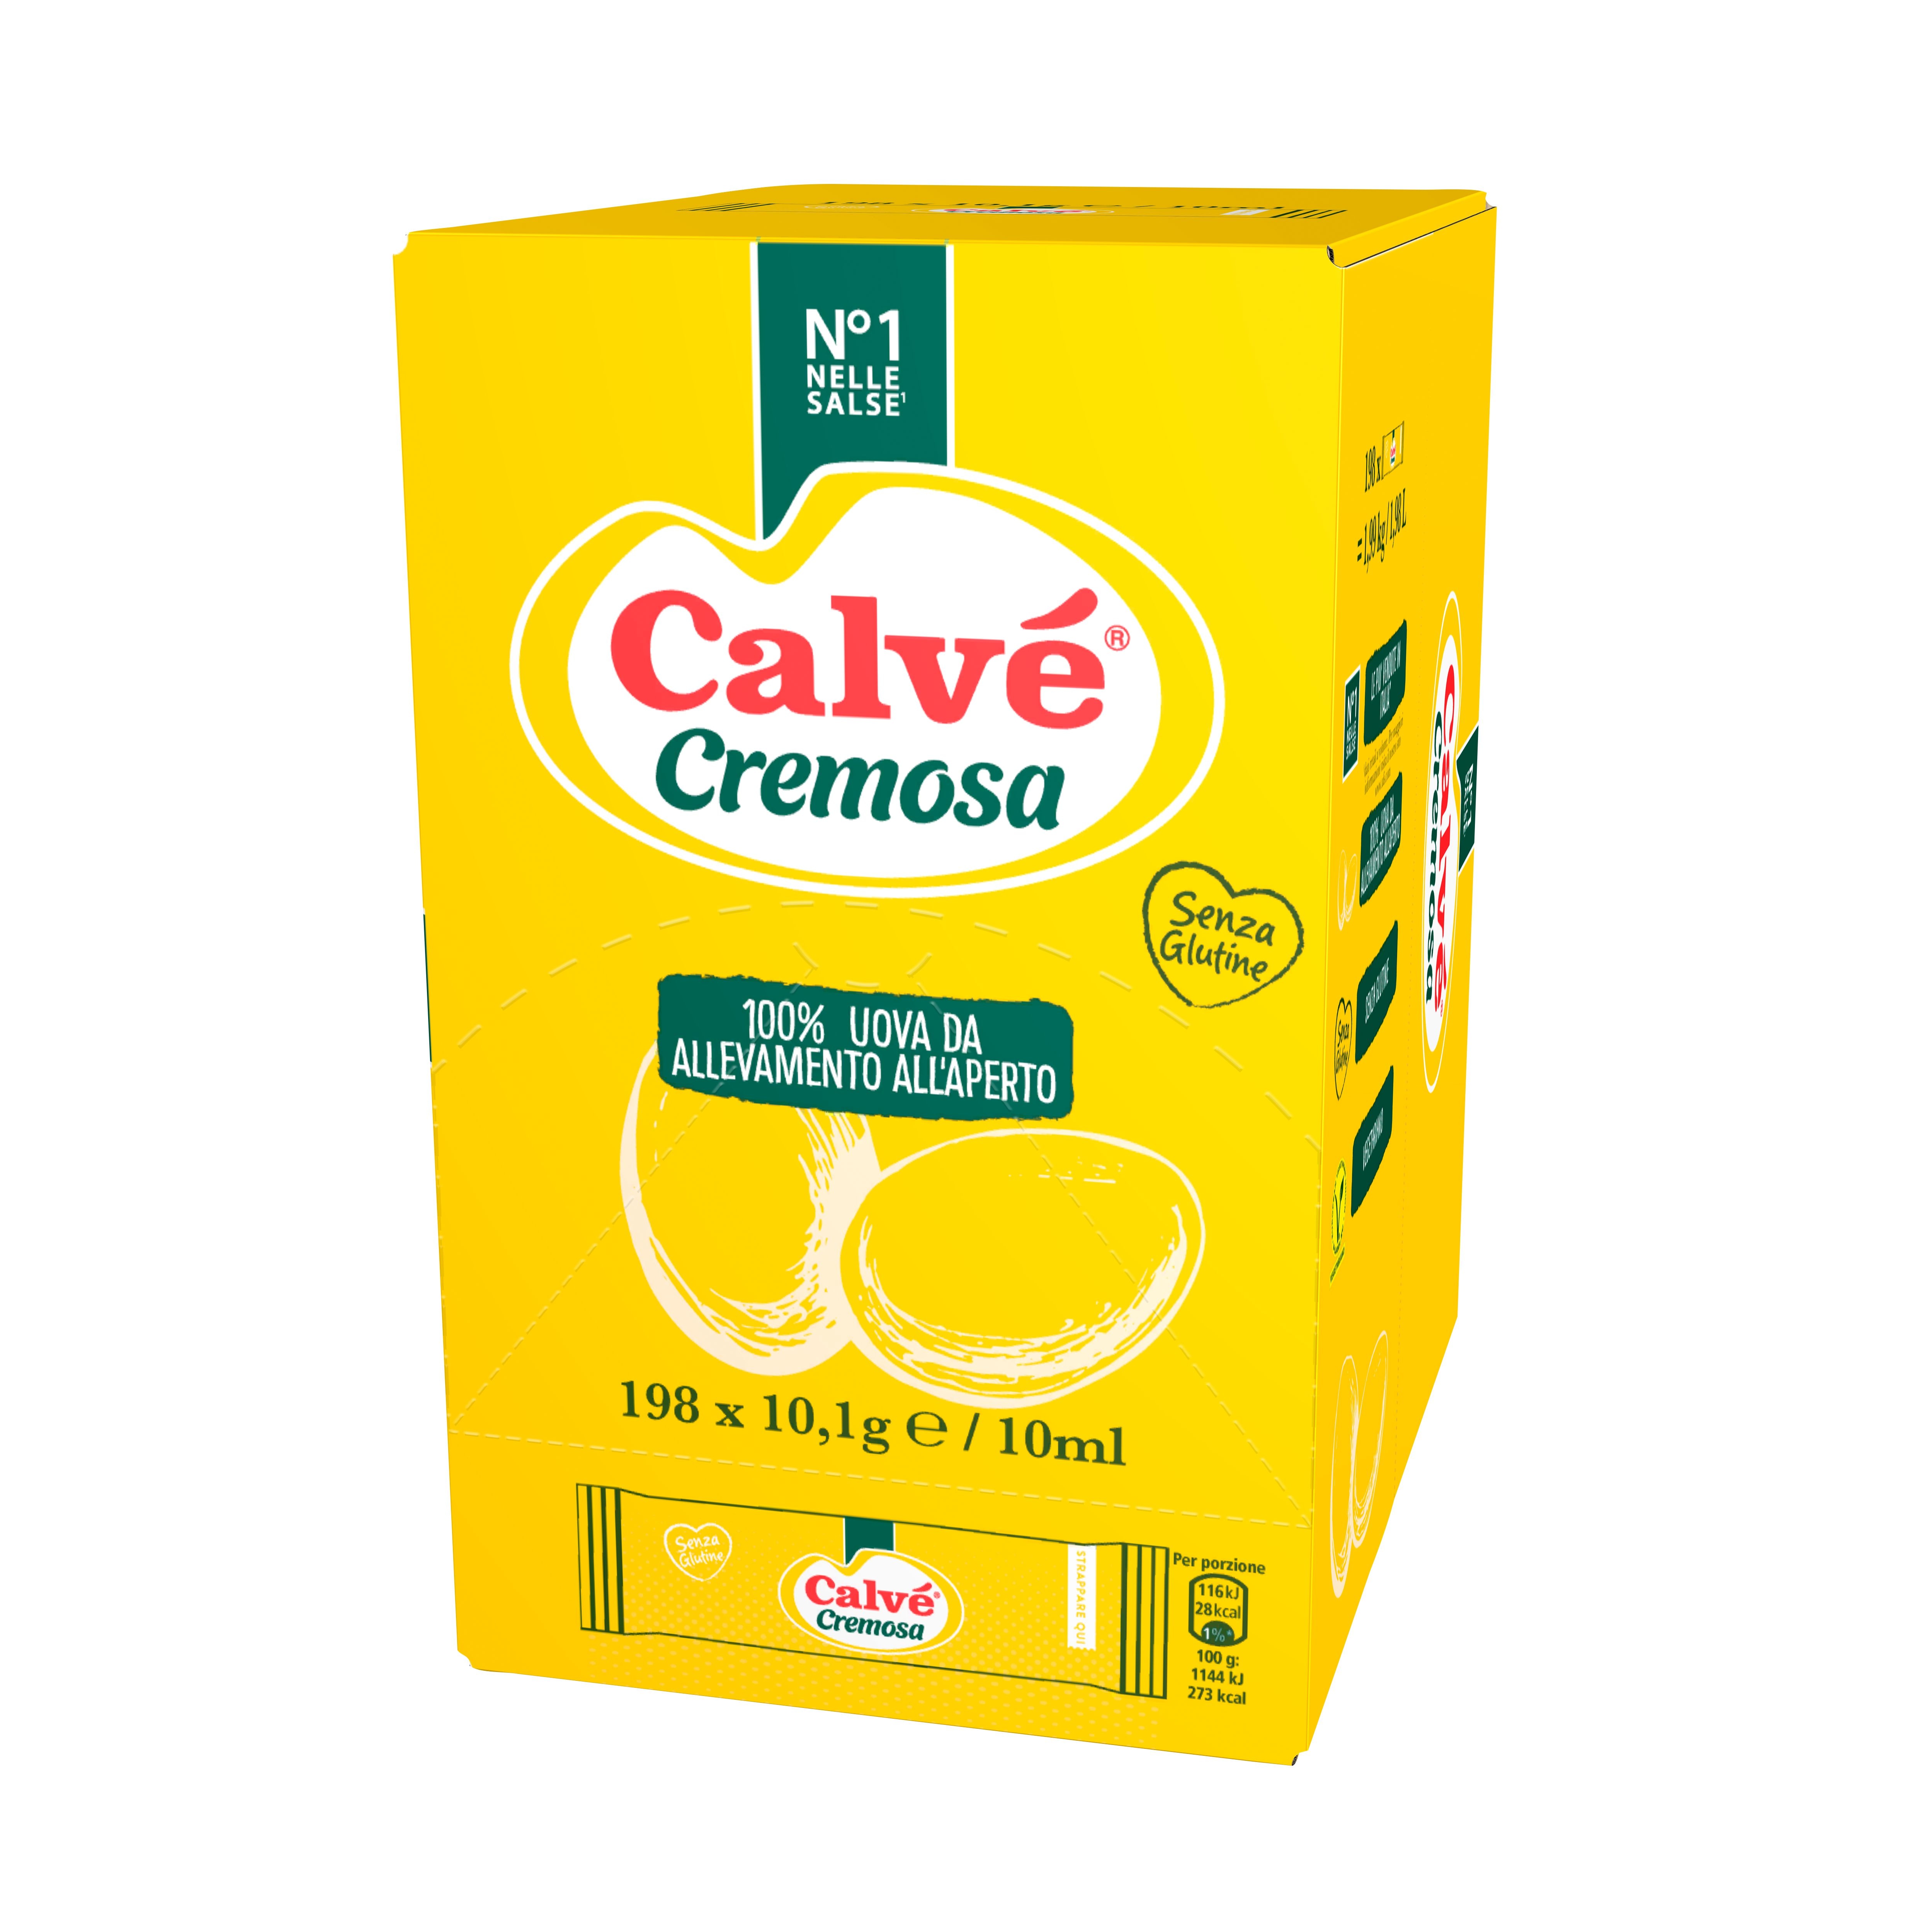 Calvè Cremosa - Con le monodosi Calvé puoi offrire le salse dal tipico gusto italiano, in un formato che ti permette di tenere i costi sotto controllo.